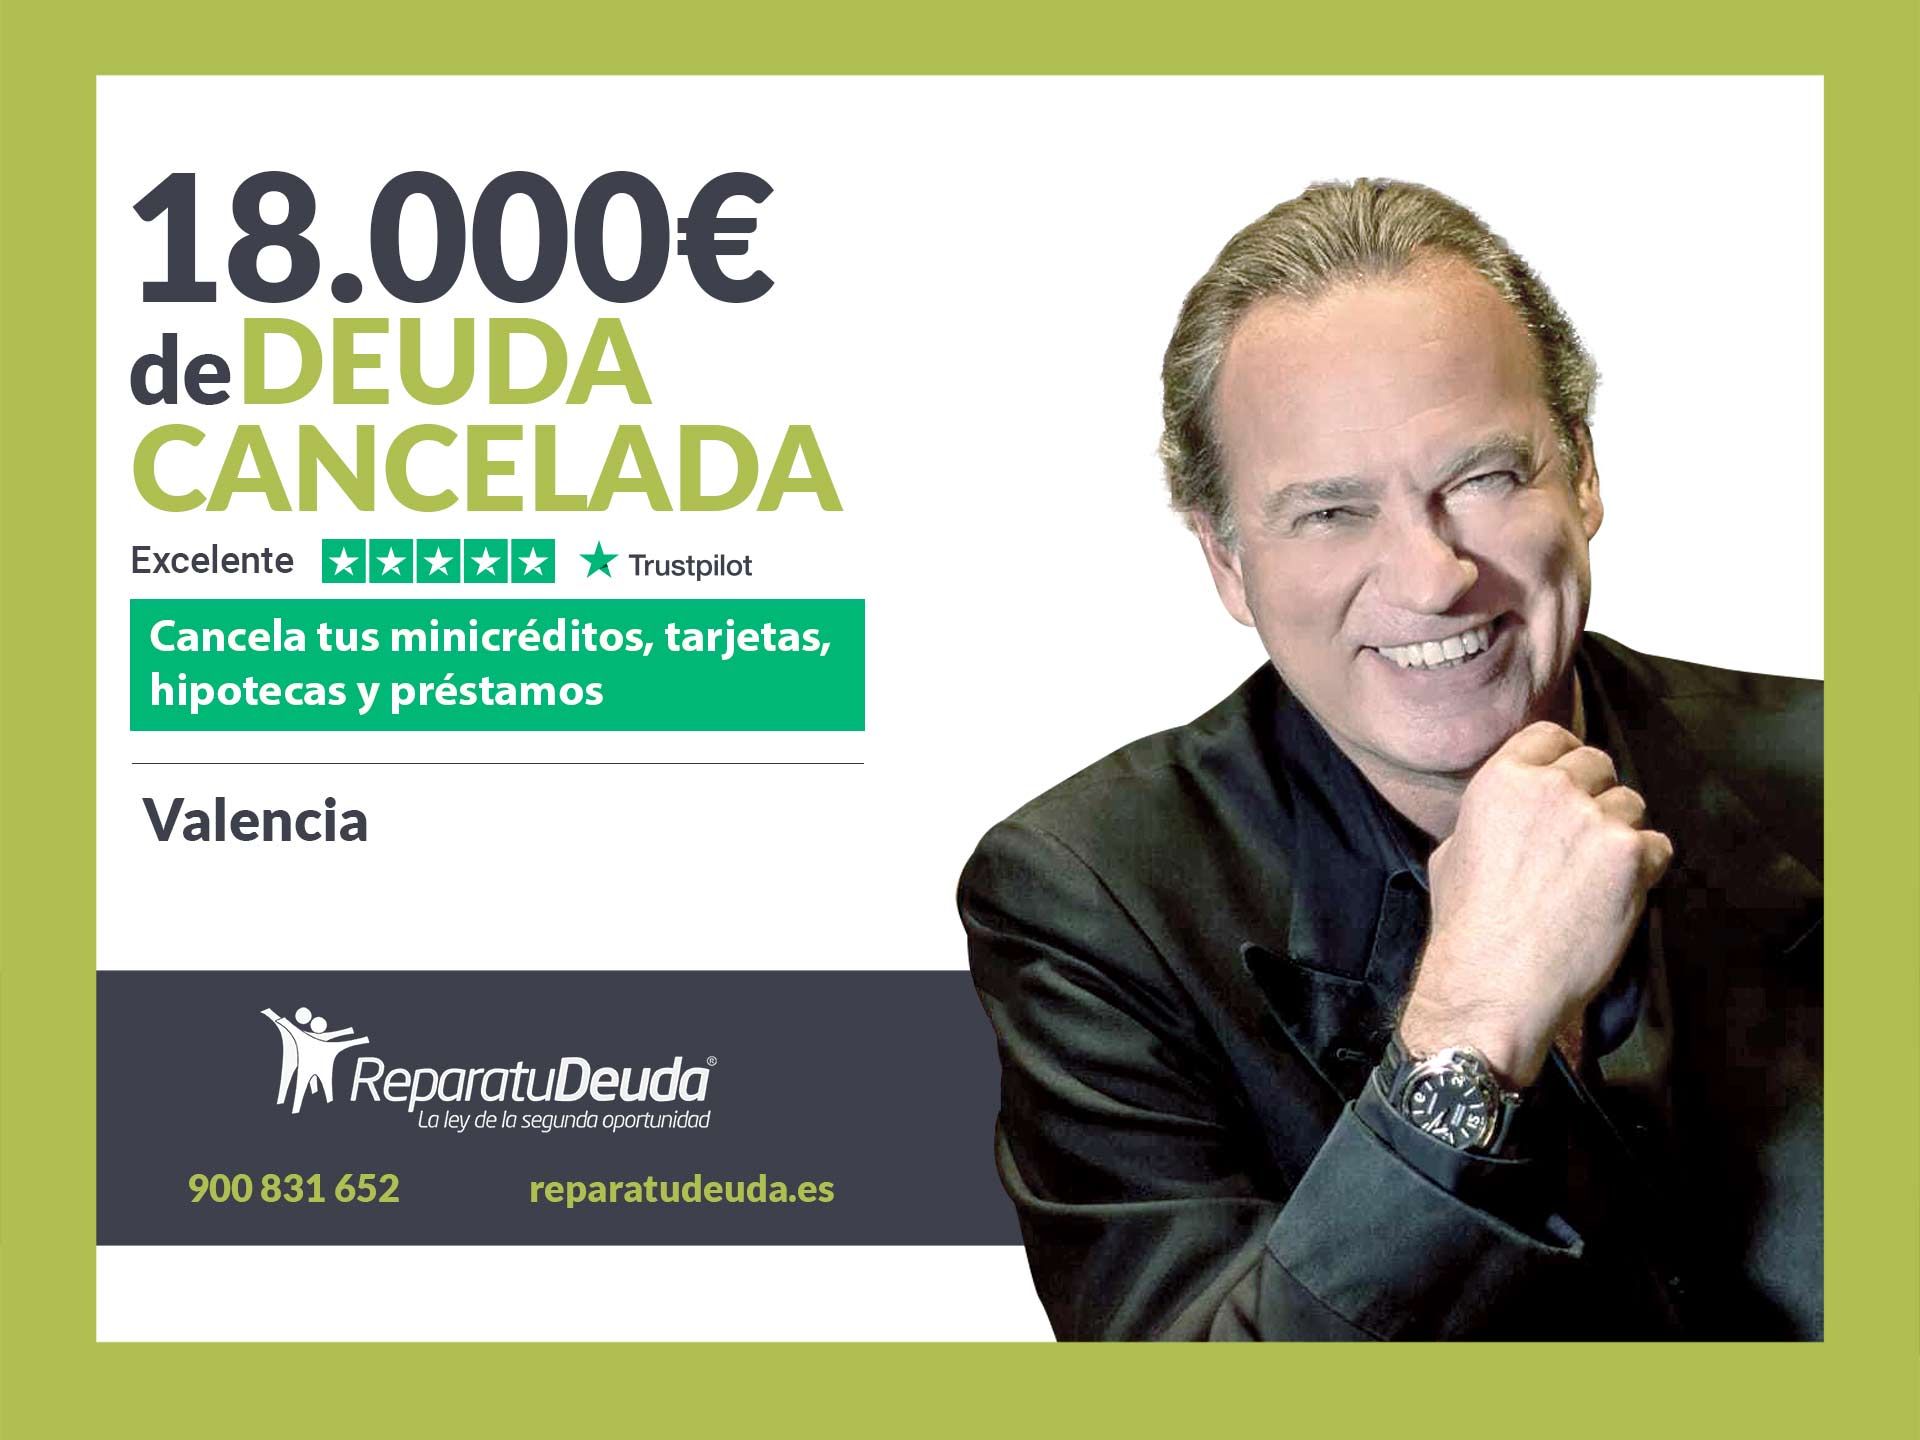 Repara tu Deuda Abogados cancela 18.000? en Valencia con la Ley de Segunda Oportunidad